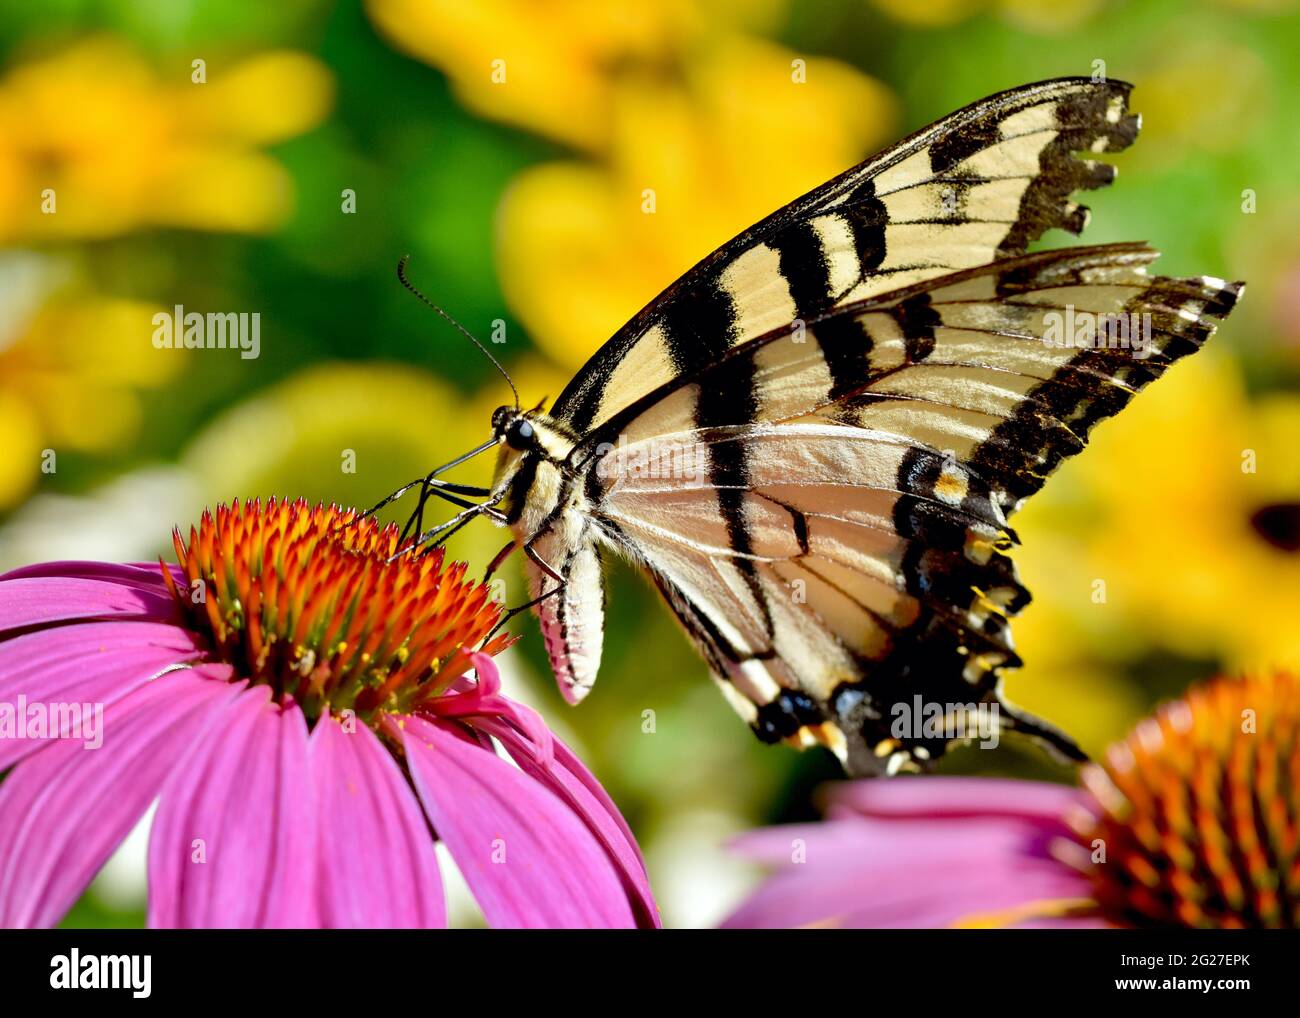 Nahaufnahme eines Östlichen Tiger-Schwalbenschwanzes (Papilio glaucus), der sich am Nektar der purpurnen Konelblume (Echinacea purpurea) ernährt. Speicherplatz kopieren. Stockfoto